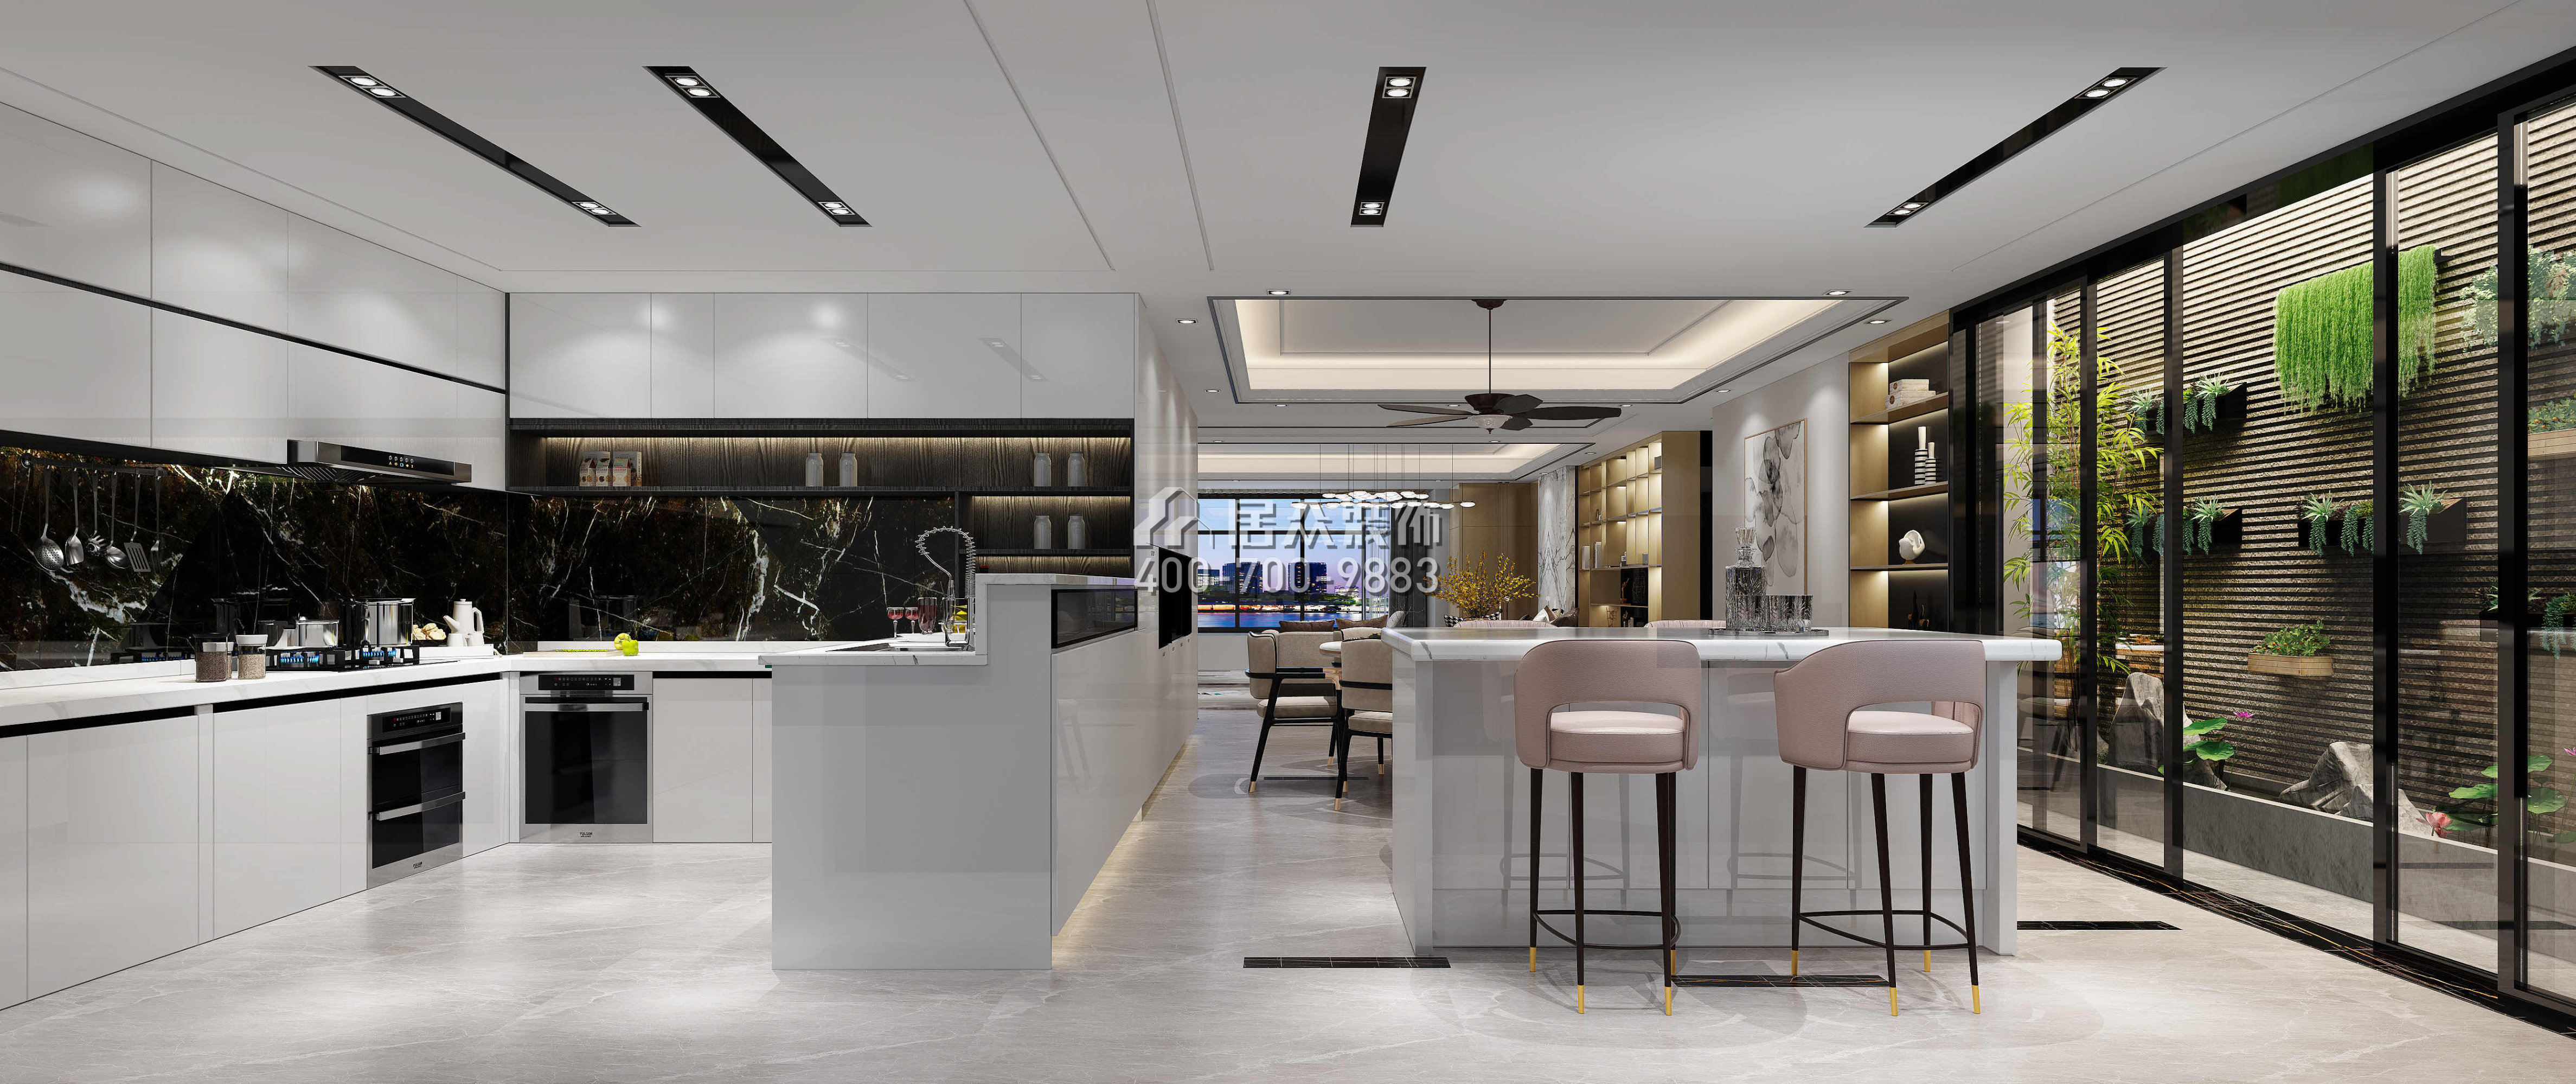 五洲花城300平方米現代簡約風格平層戶型餐廳裝修效果圖